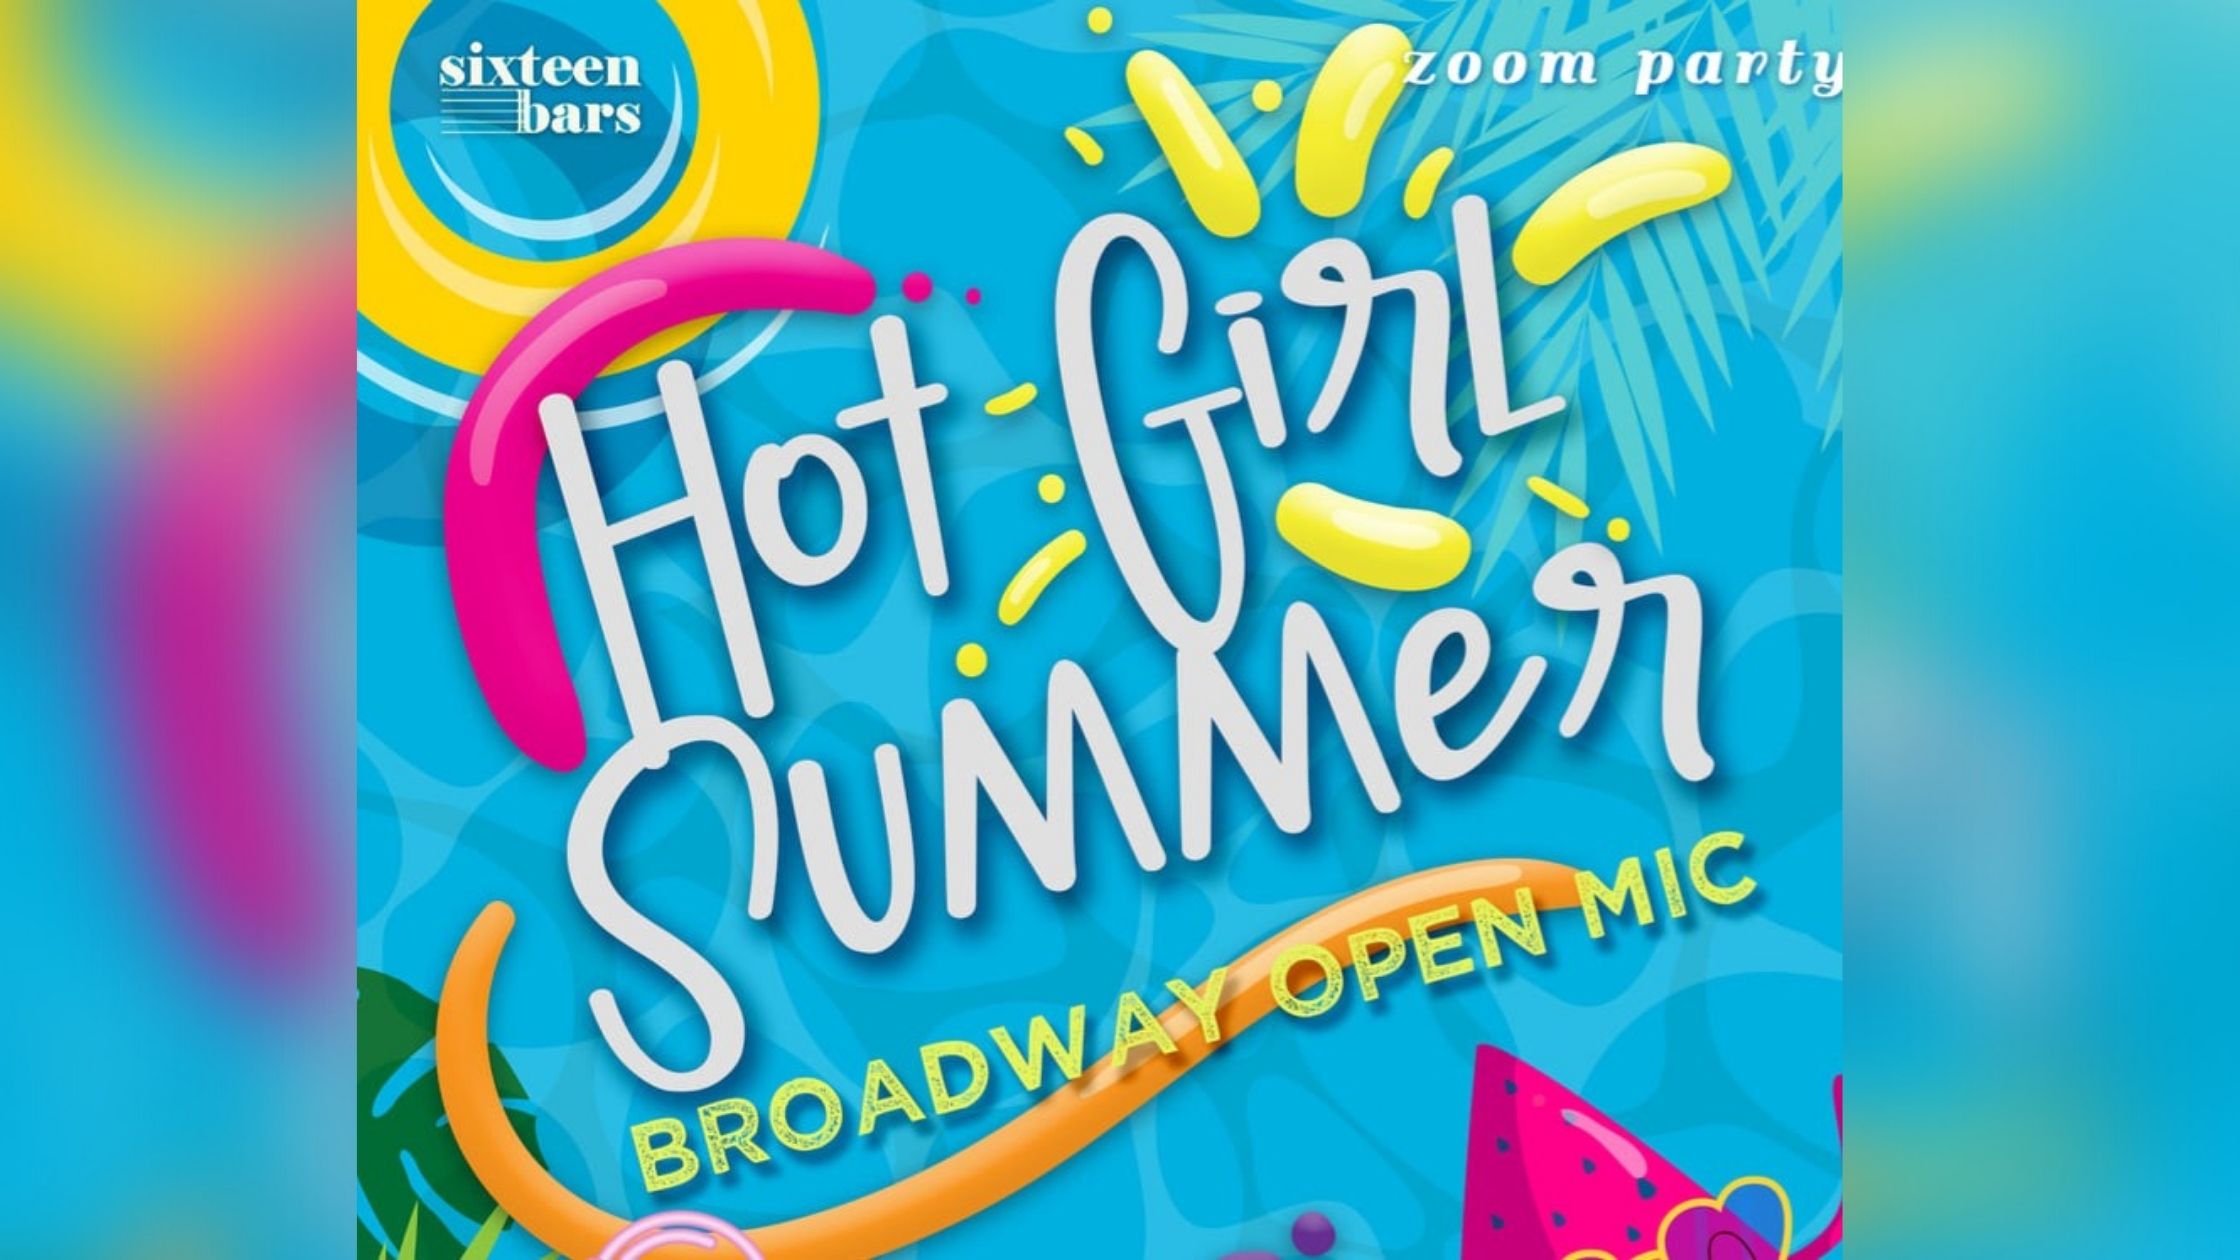 HOT GIRL SUMMER: Broadway Open Mic